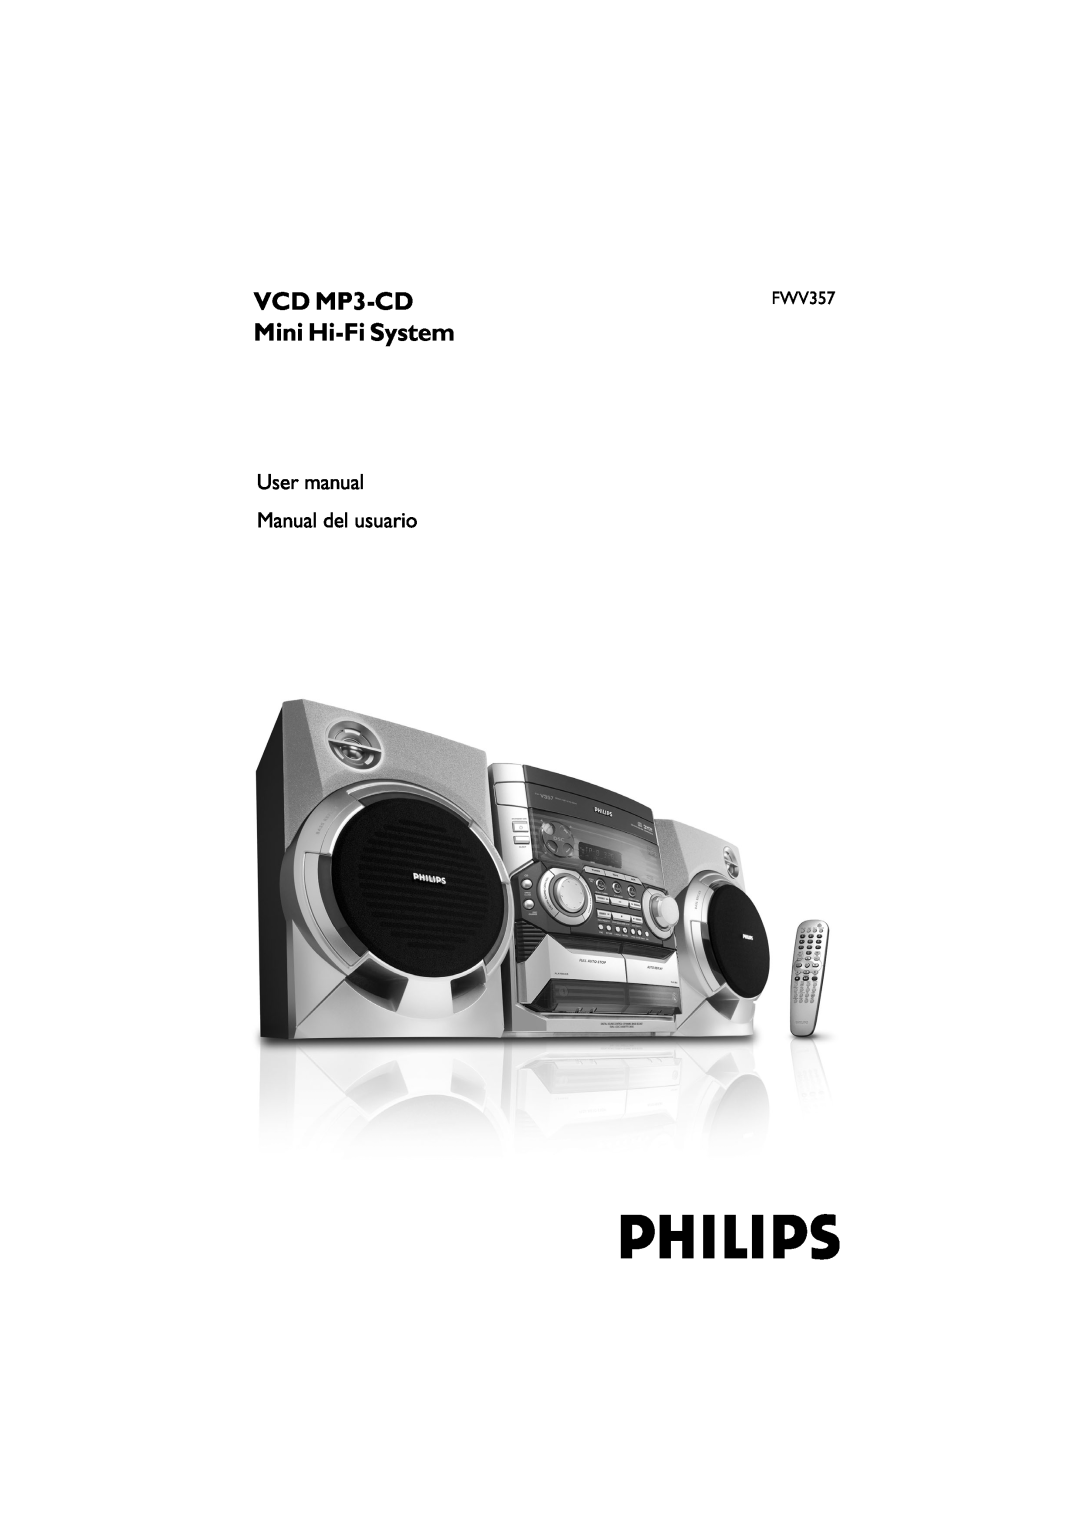 Philips FWV357/55 manual VCD MP3-CD, Mini Hi-FiSystem 